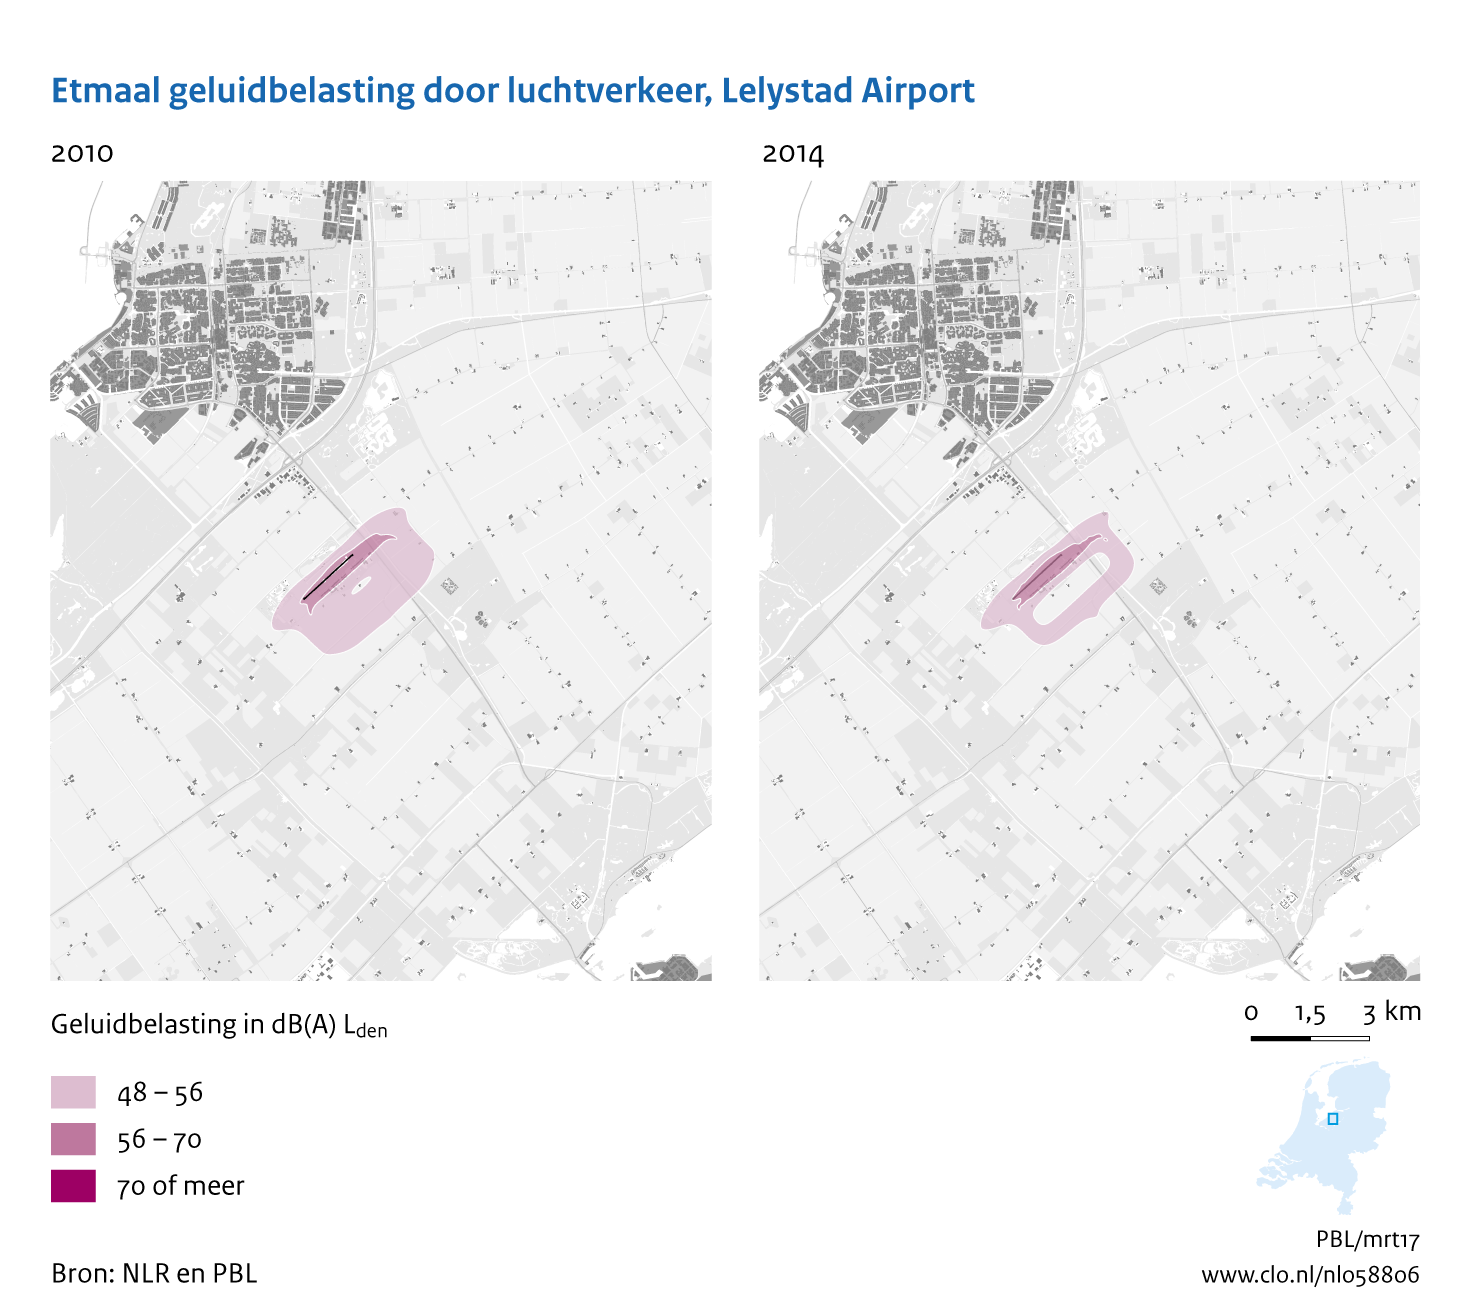 Figuur Etmaal geluidbelasting door luchtvaart, Lelystad Airport, 2010-2014. In de rest van de tekst wordt deze figuur uitgebreider uitgelegd.